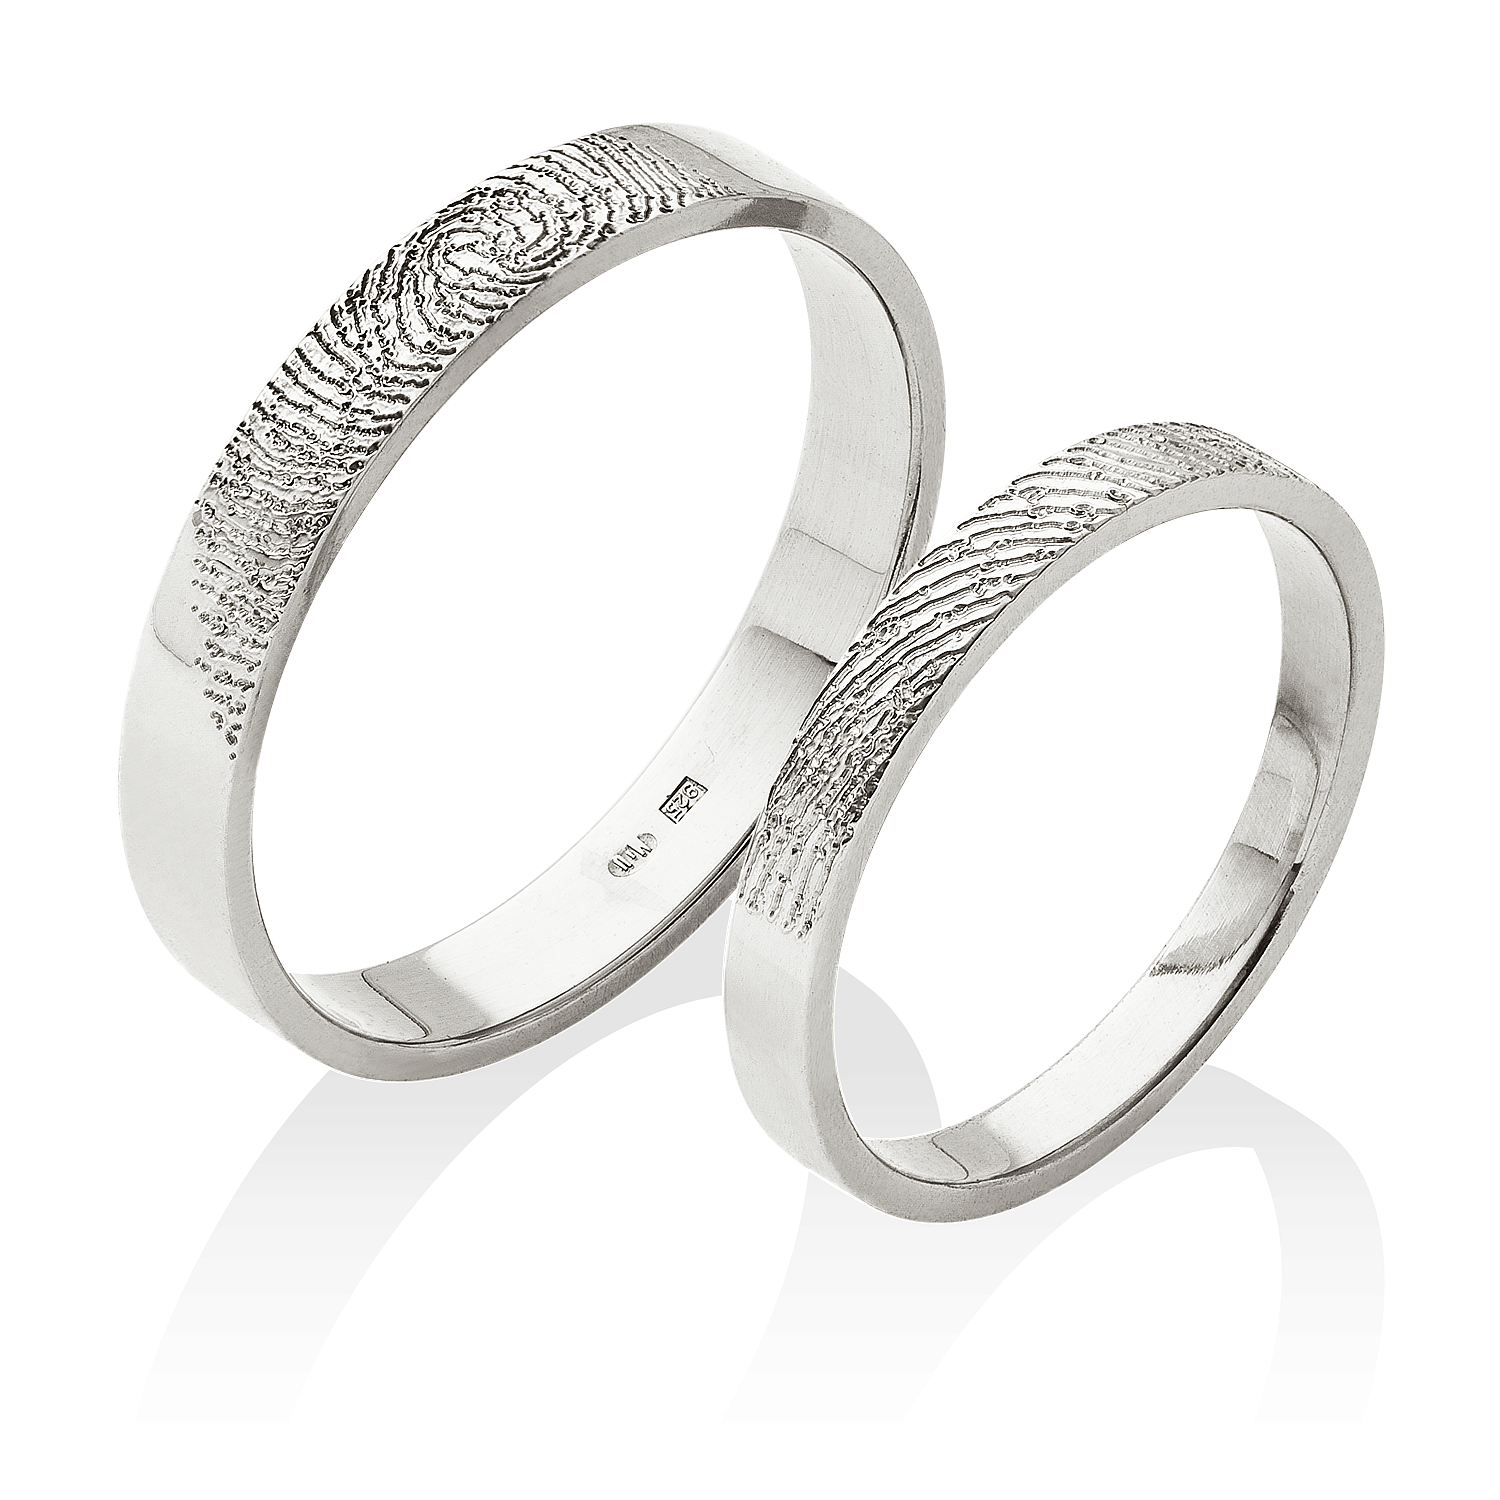 Platinové prsteny s jedinečnými otisky vašich prstů